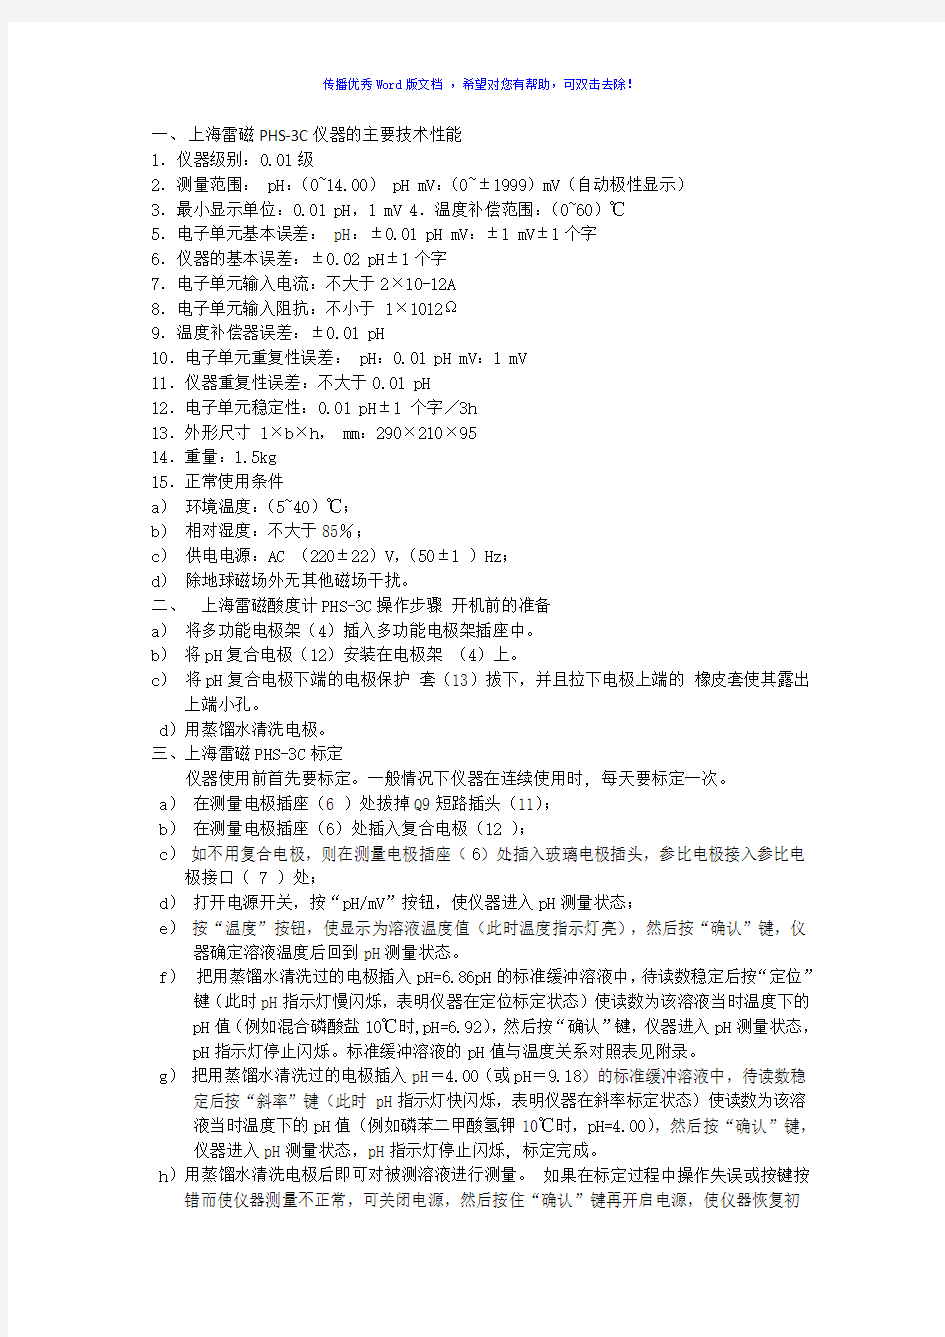 上海雷磁酸度计PHS-3C使用说明书Word版